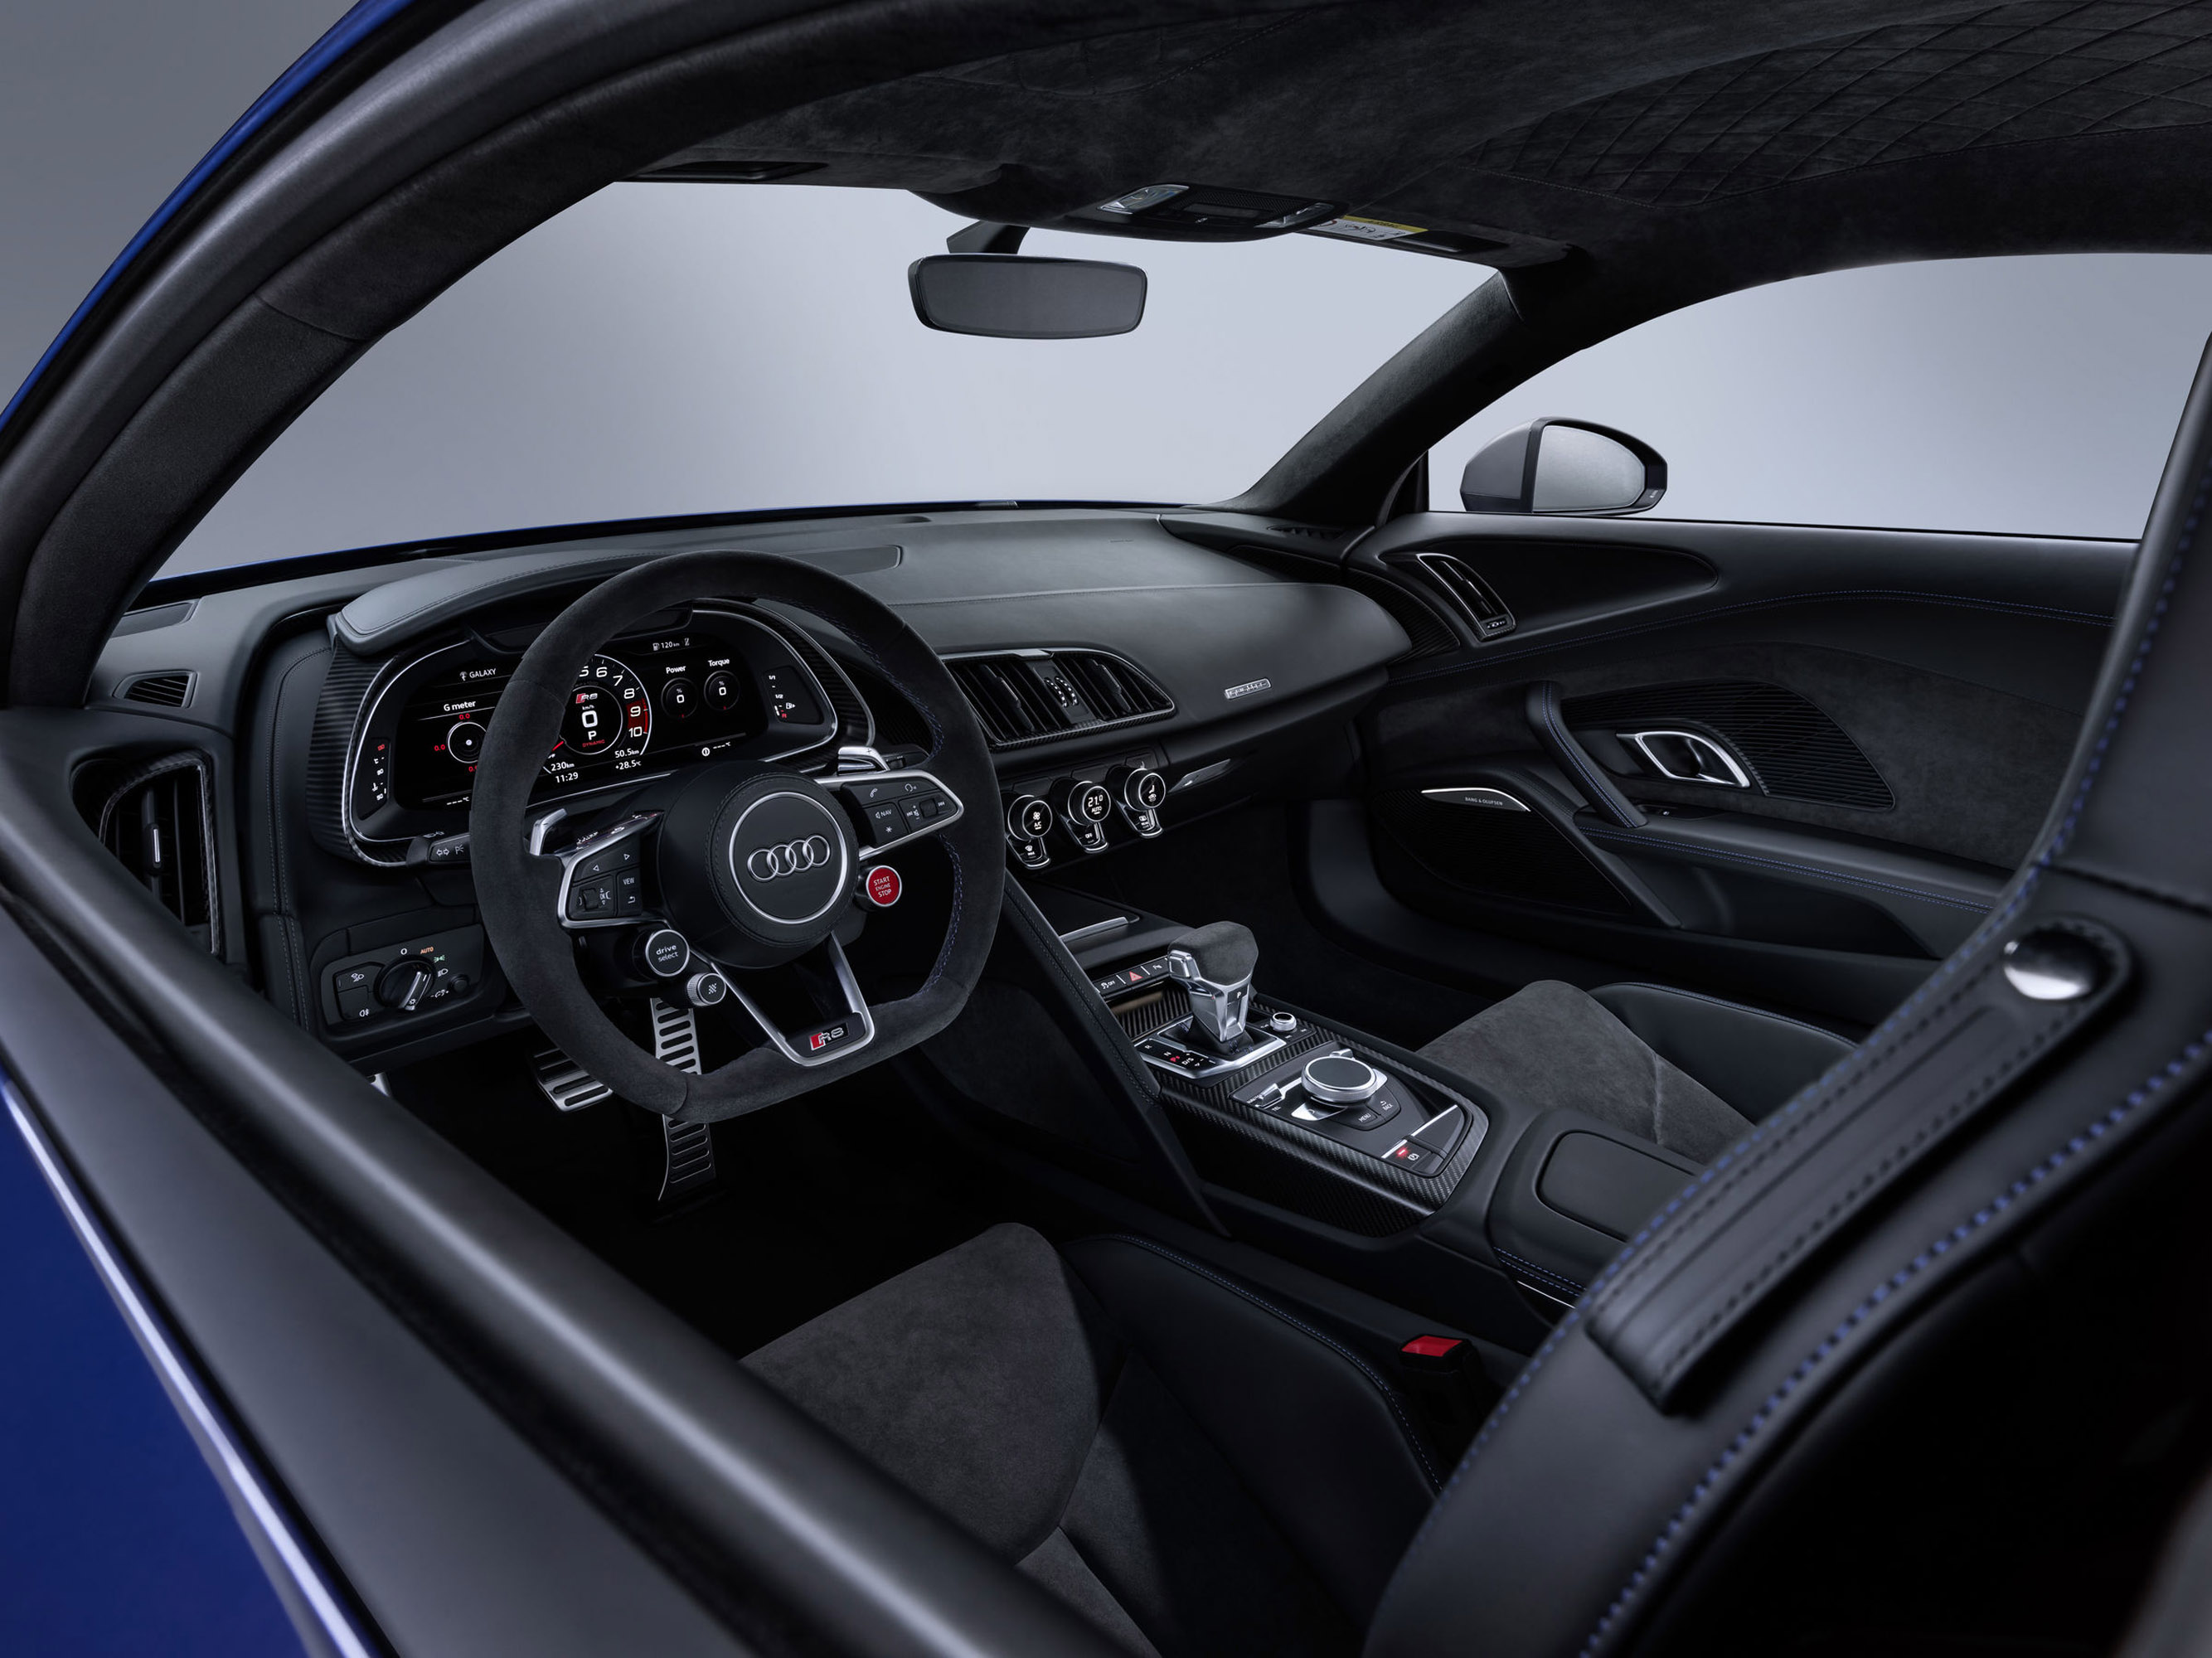 Спортивный характер автомобиля определенно ощущается внутри. Весь салон ориентирована на водителя и оснащен самыми передовыми технологиями - виртуальной кабиной Audi, навигацией MMI plus, внутренним светодиодным освещением и аудиосистемой Bang & Oluf